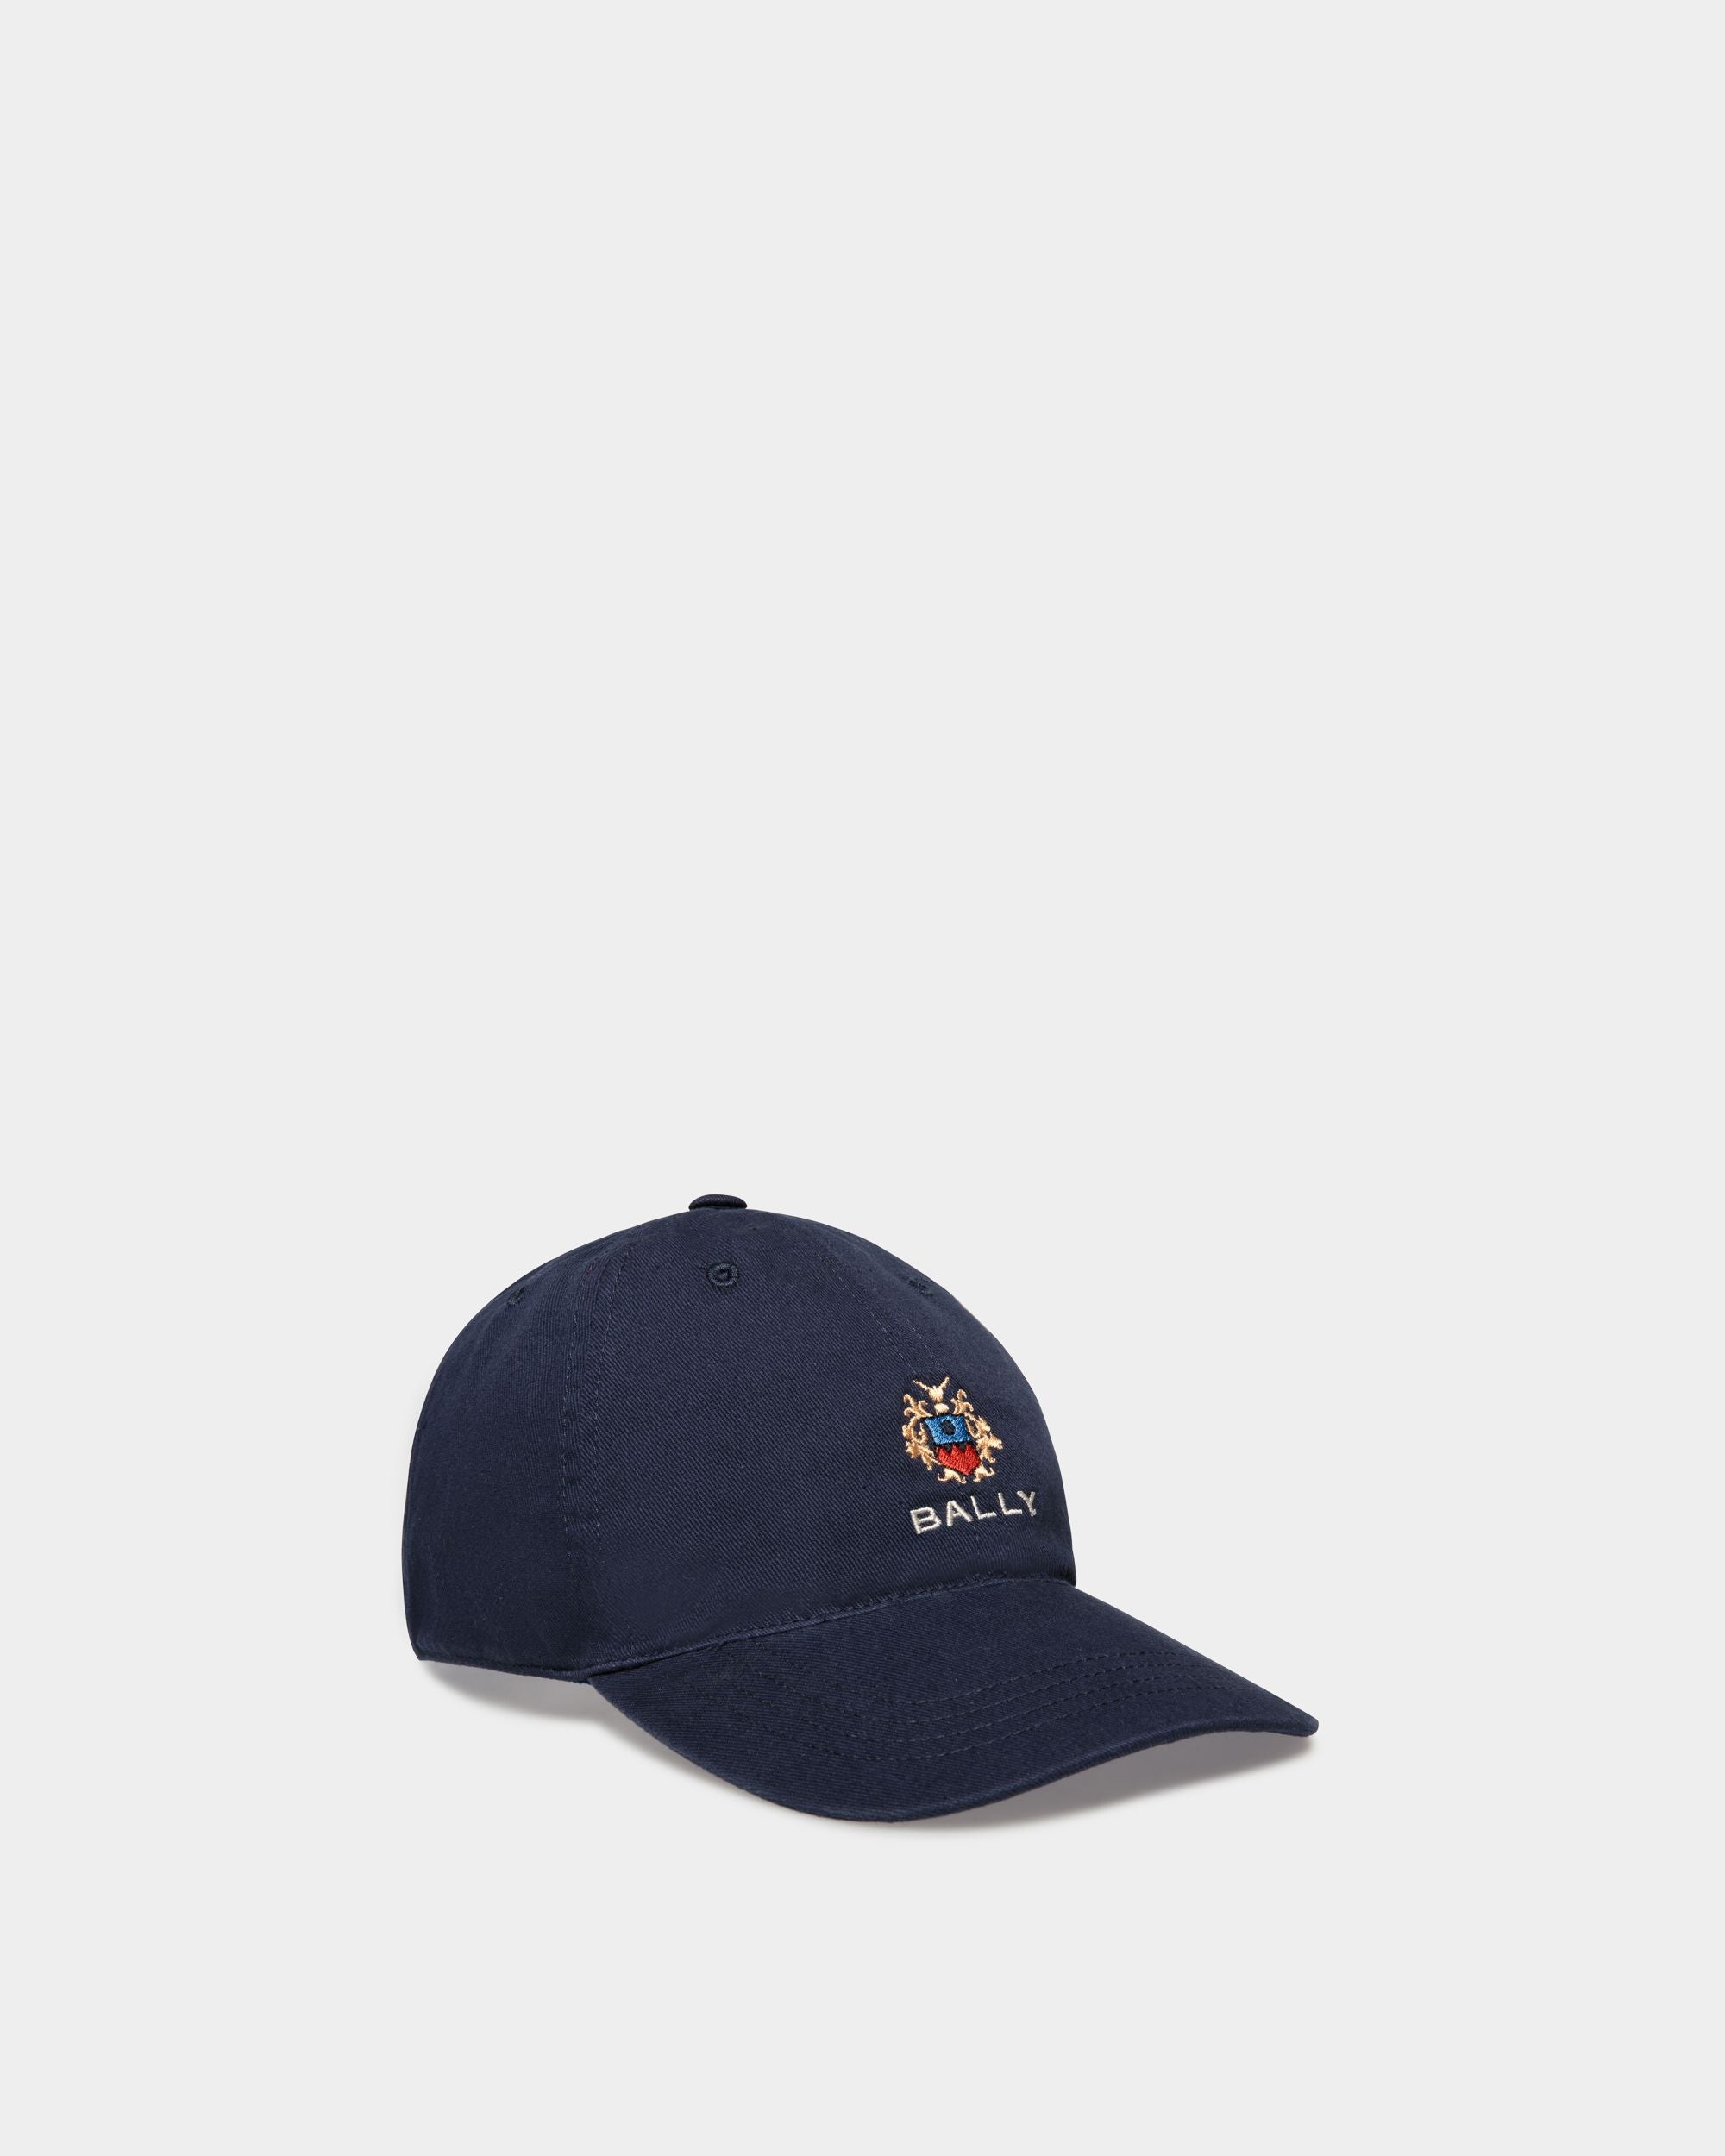 Men's Baseball Hat in Navy Blue Cotton | Bally | Still Life Front